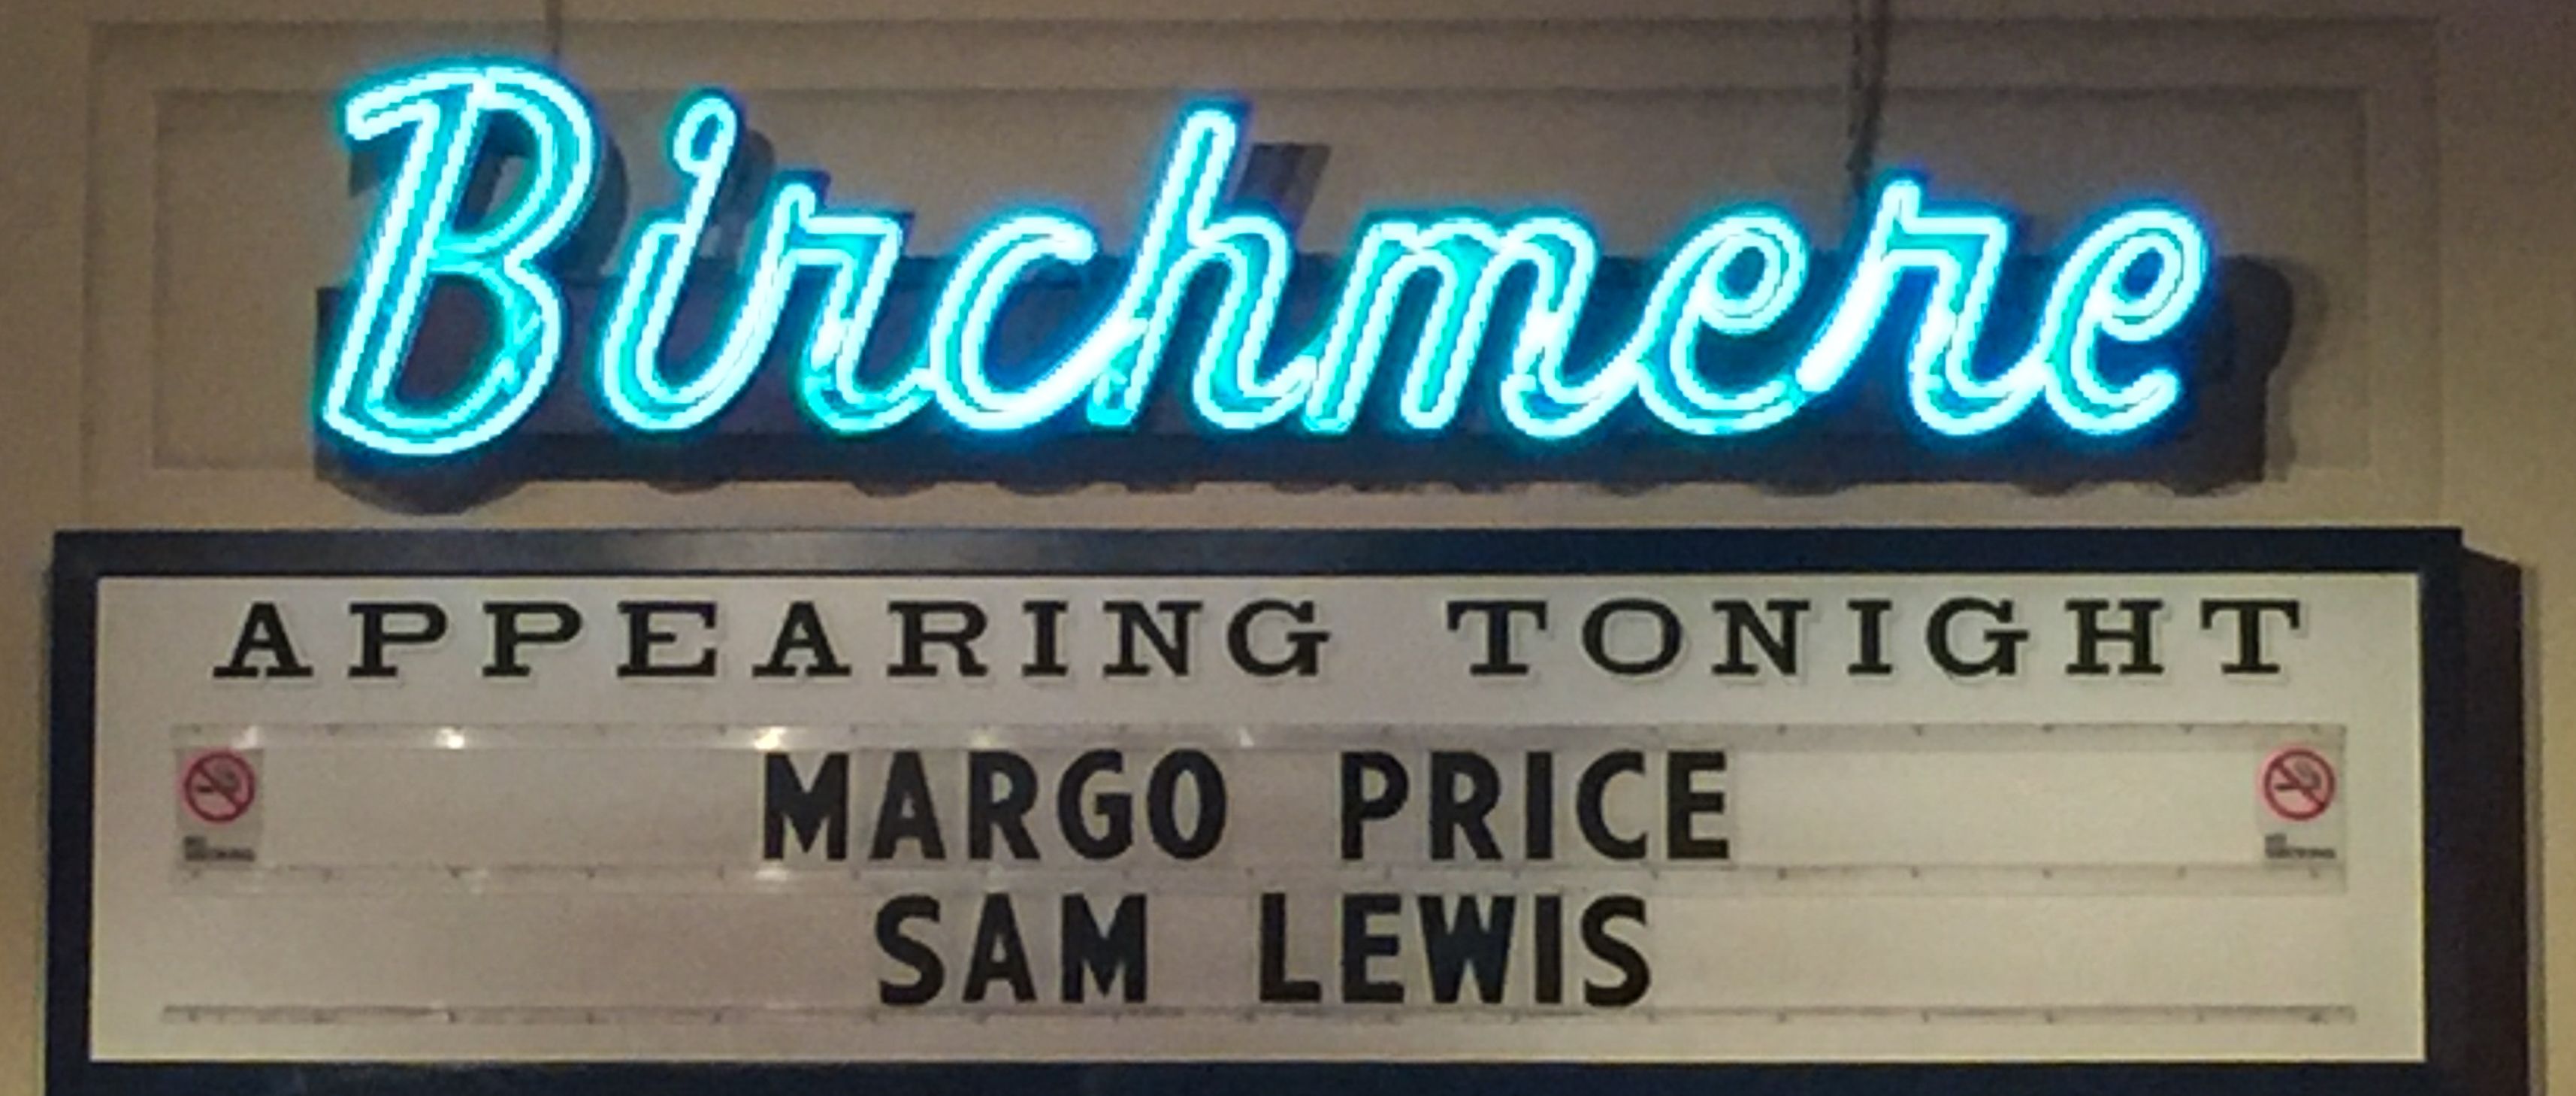 Margo Price